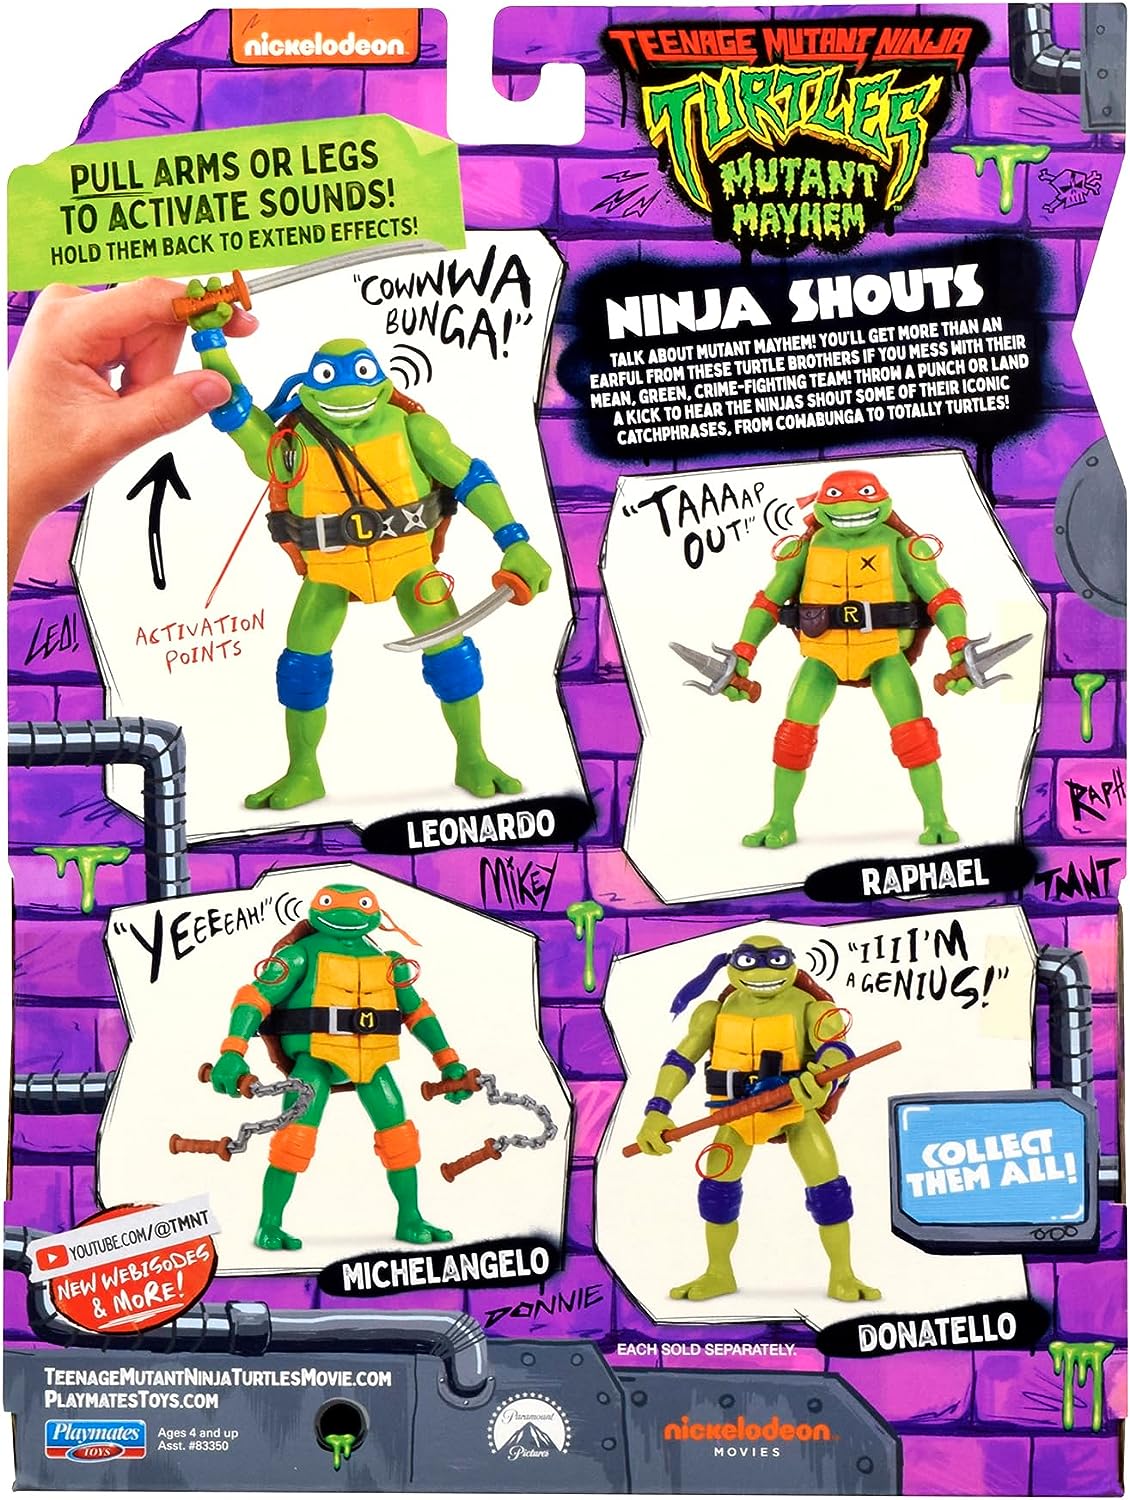 Teenage Mutant Ninja Turtle - Ninja Shouts - Leonardo